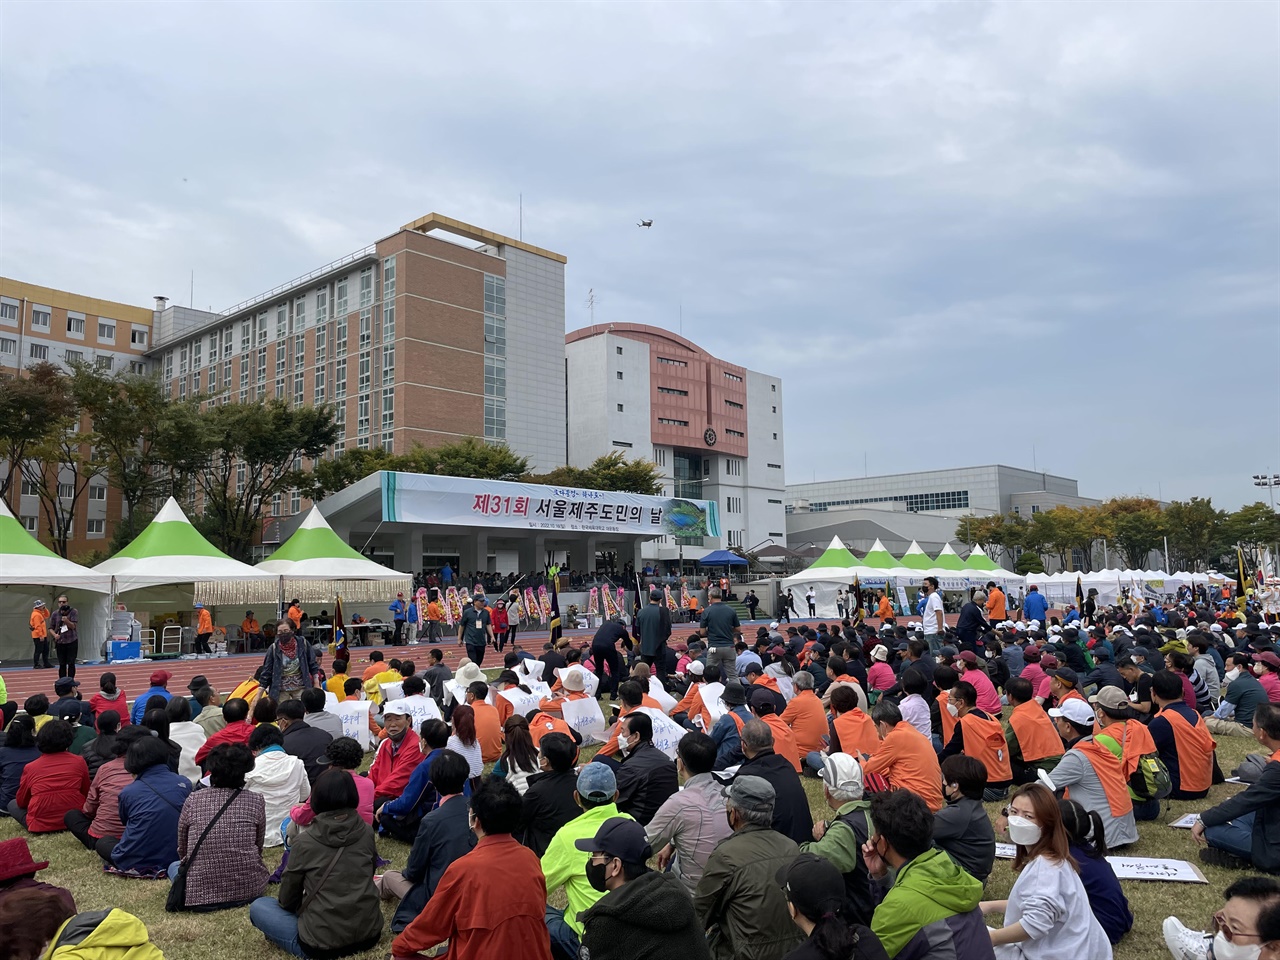 '모다들엉 하나로'라는 캐치프레이즈 아래 모인 서울제주도민들